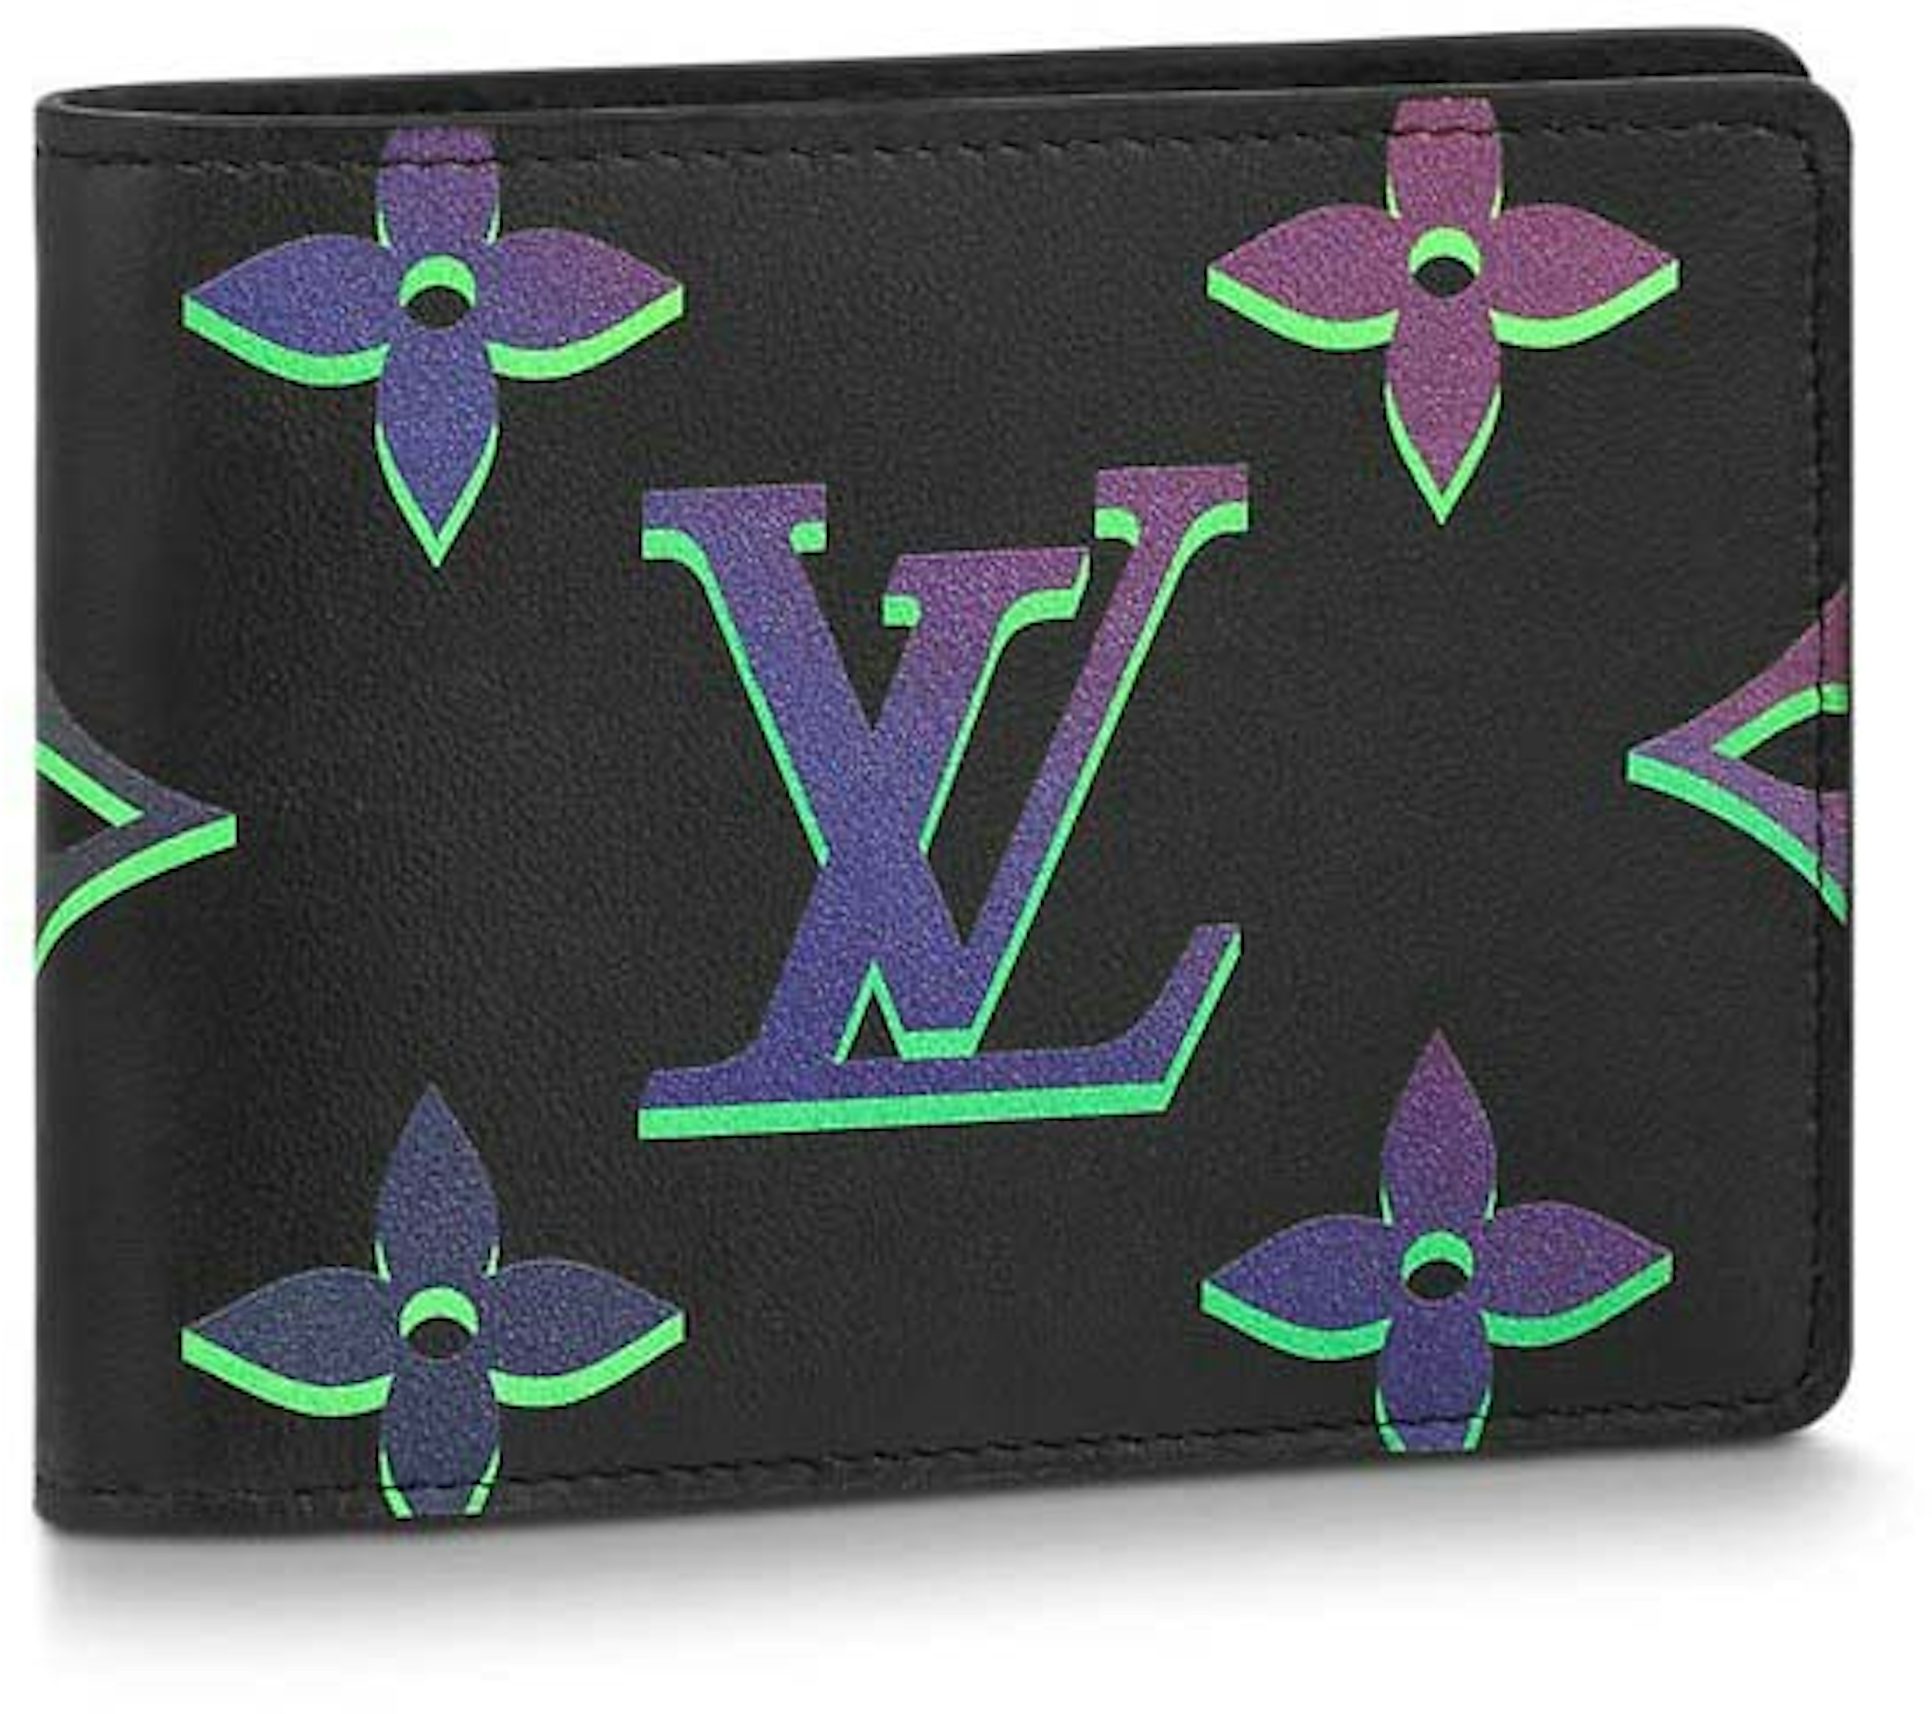 Louis Vuitton Multiple Wallet Black autres Cuirs